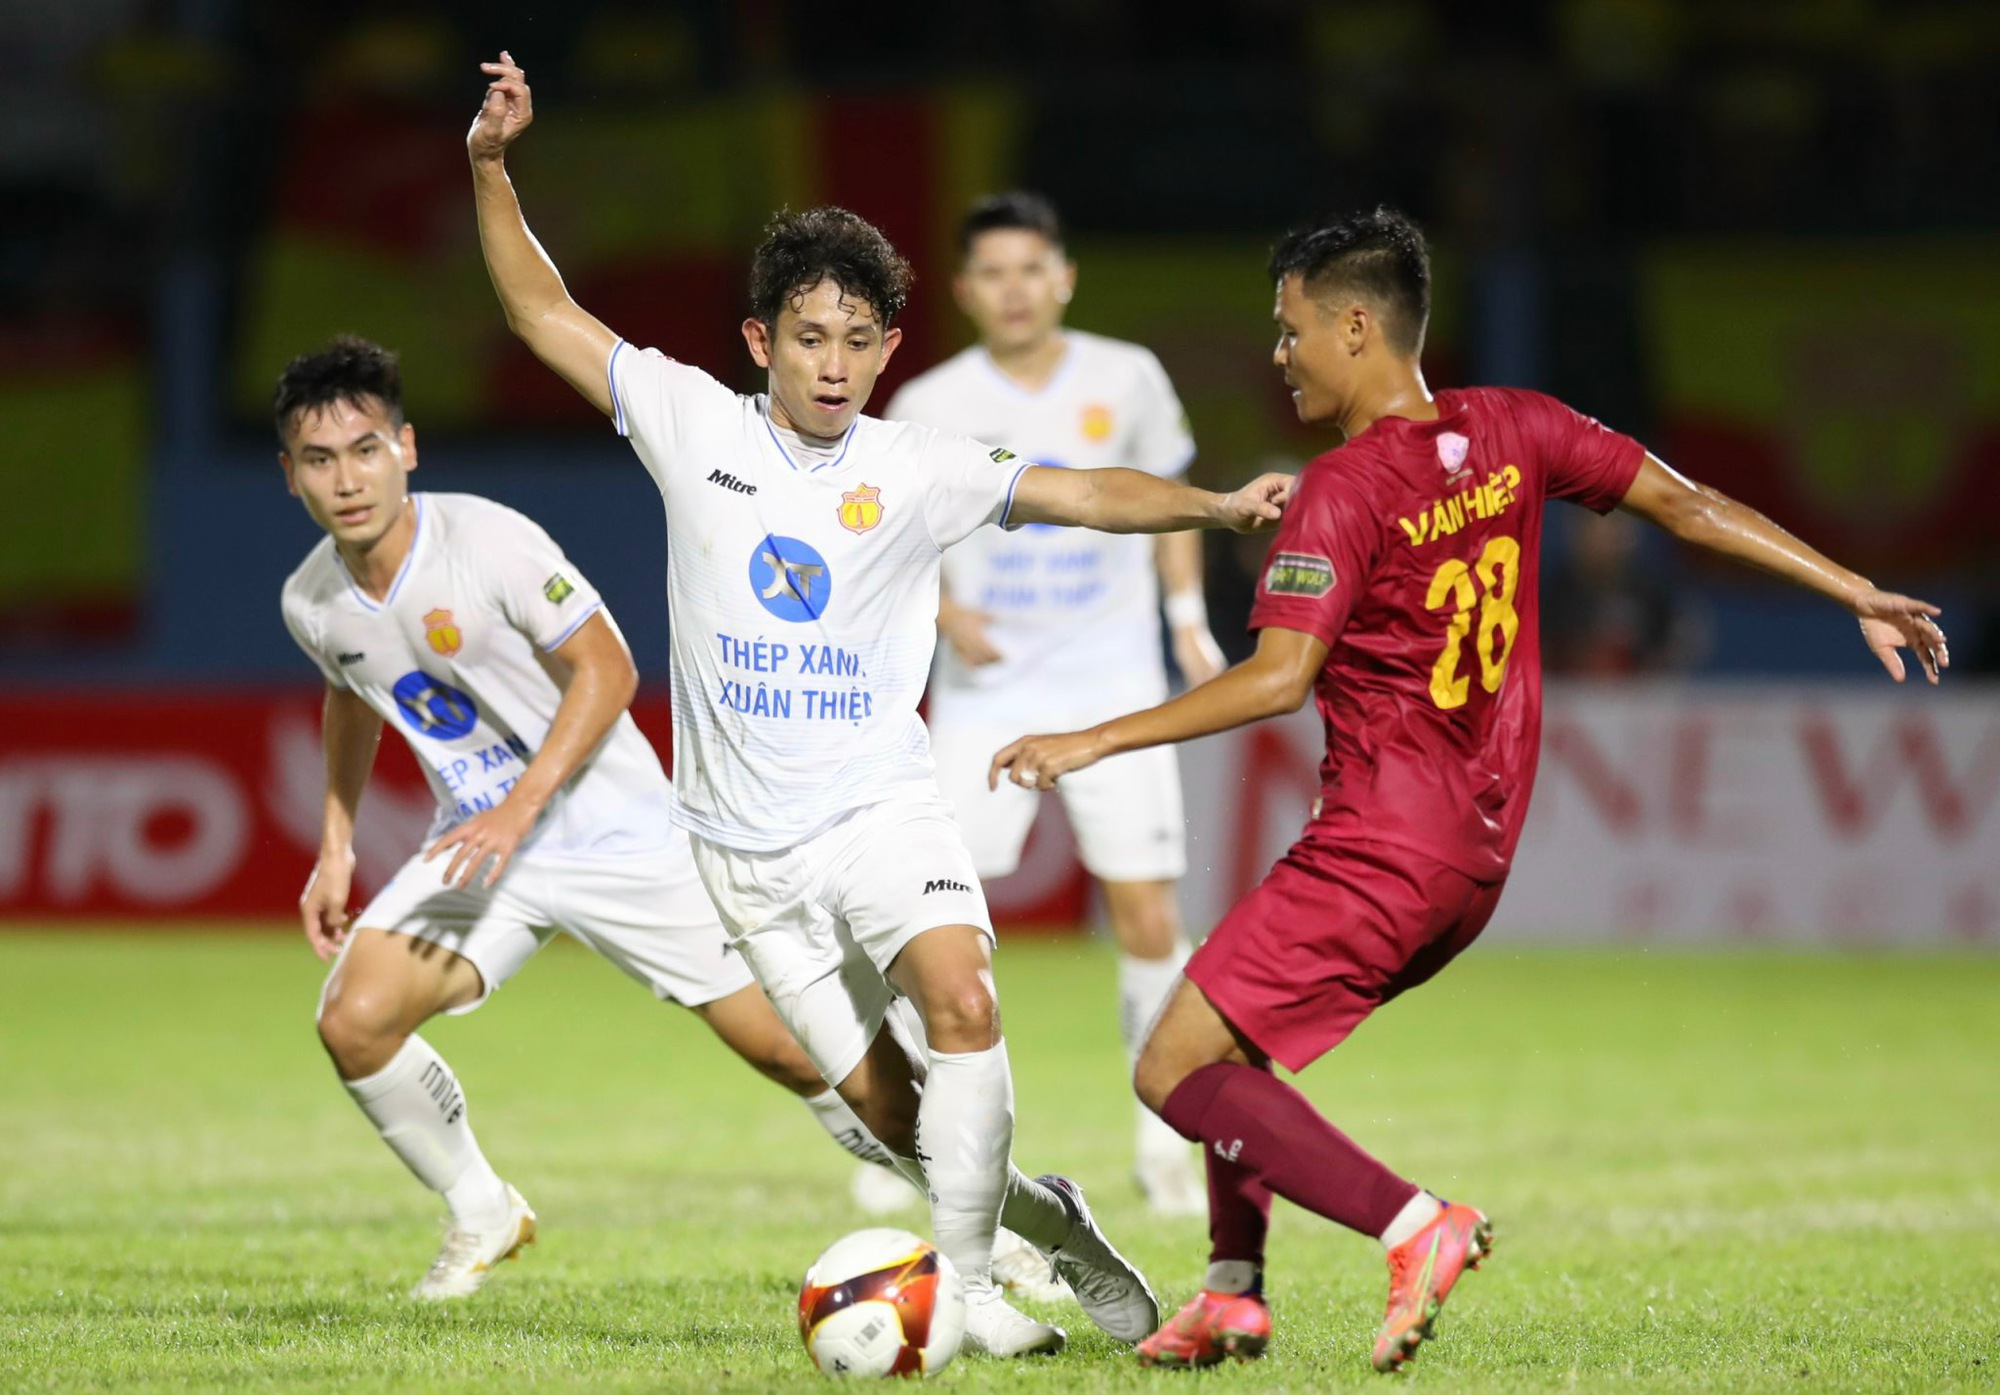 Thắng kịch tính Khánh Hoà, Nam Định FC dẫn đầu bảng xếp hạng - Ảnh 2.